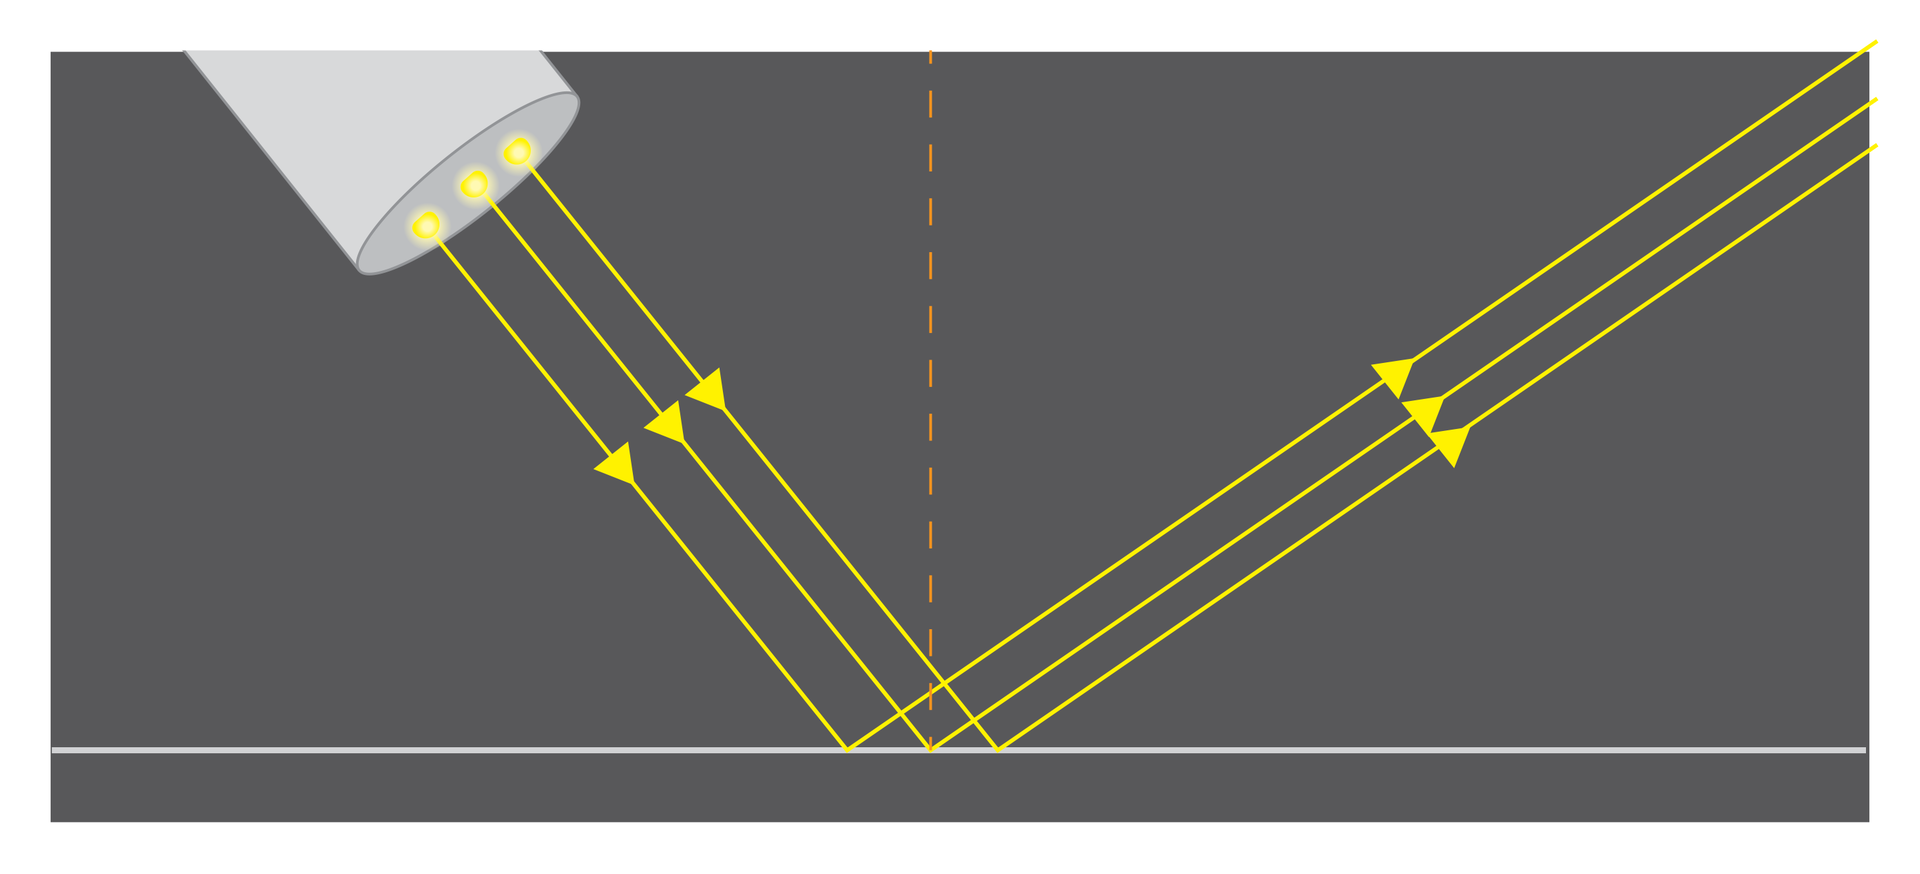 Grafika przedstawia odbicie wiązek światła padających na płaską powierzchnię. Żródło światła emituje trzy równoległe wiązki światła. Każda wiązka światła odbija się od powierzchni pod tym samym kątem i w tym samym kierunku.